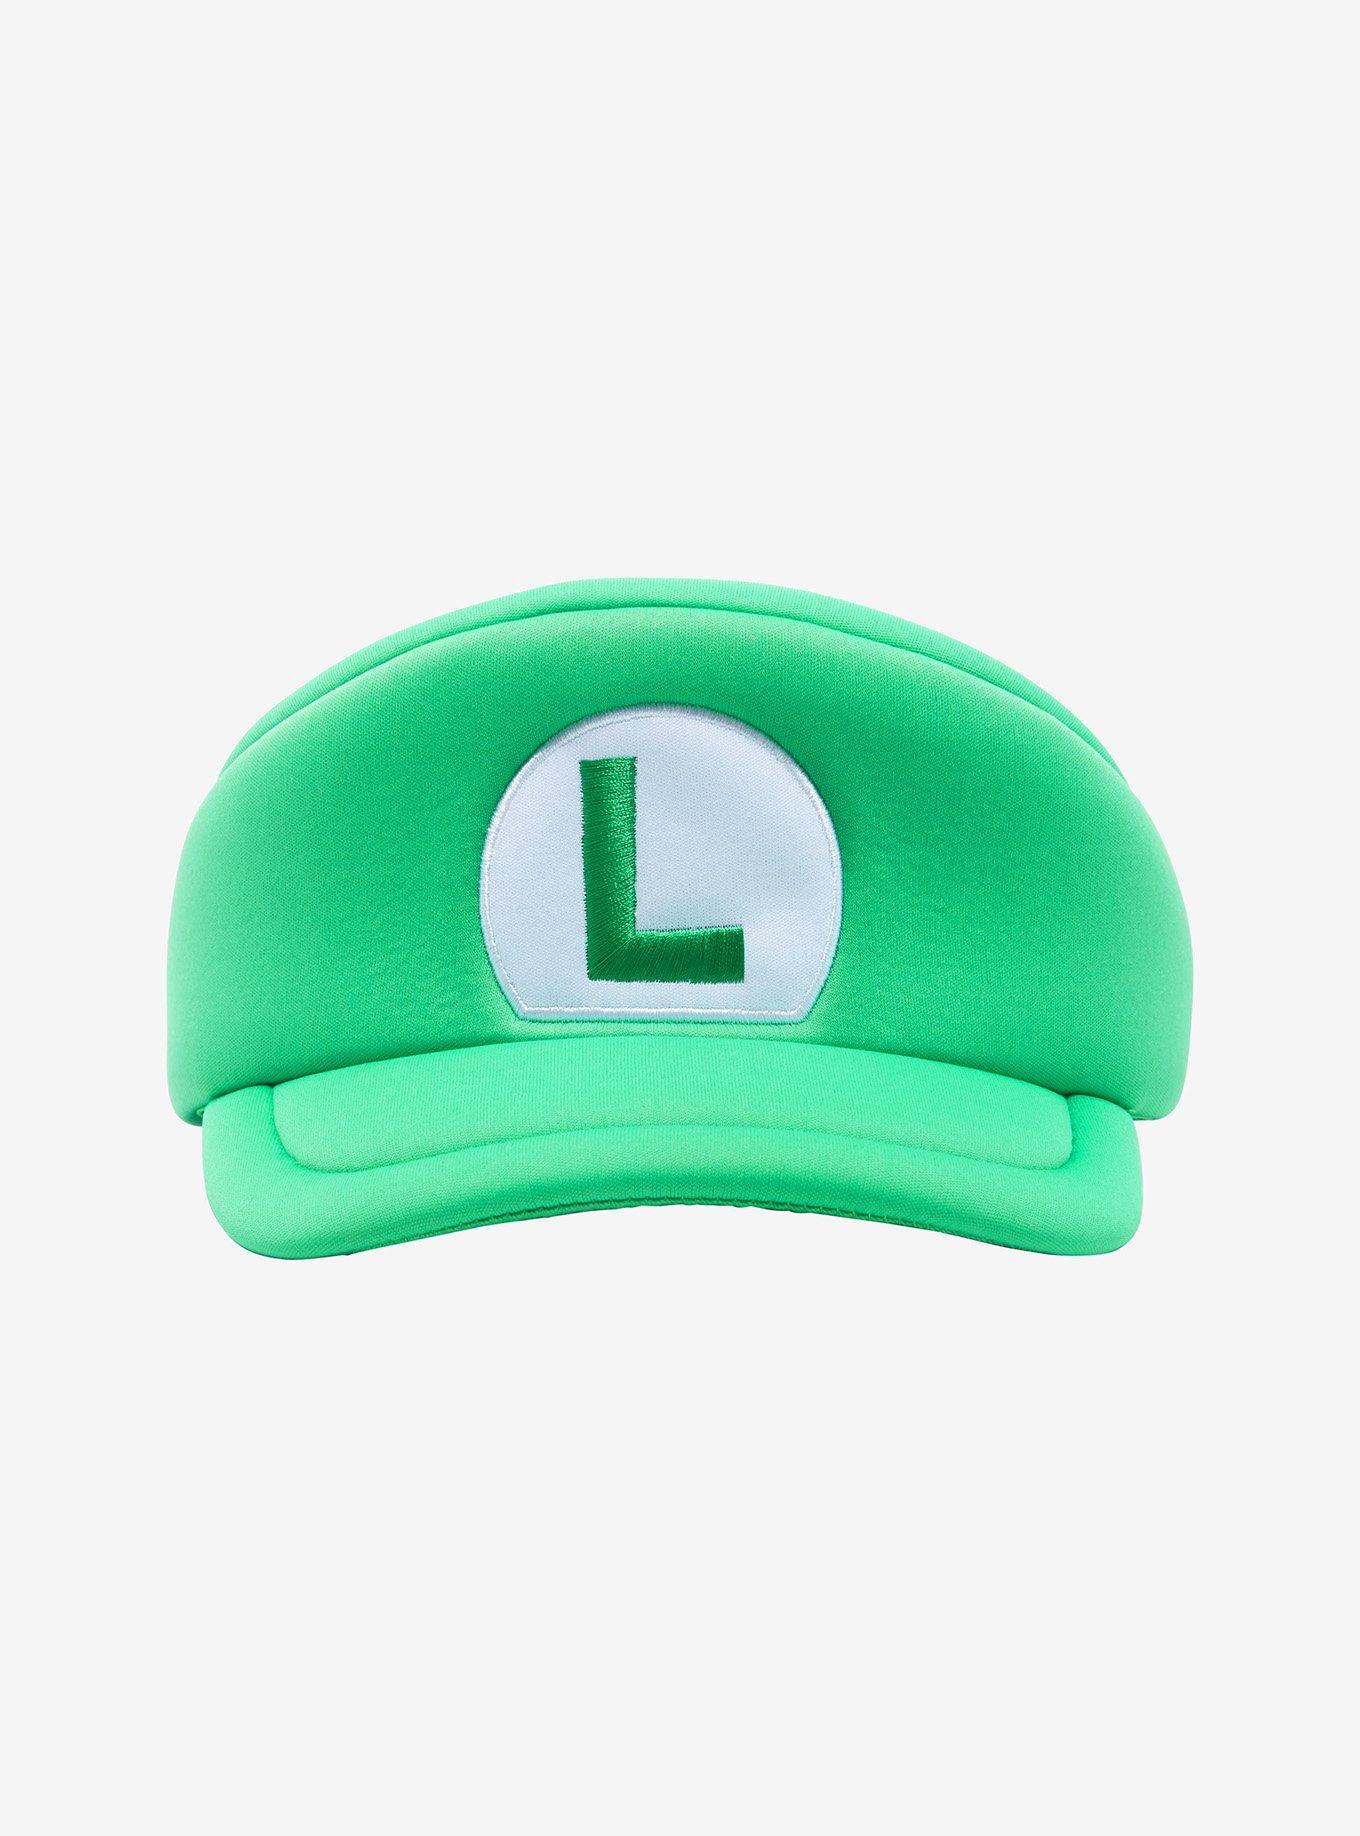 Super Mario Birthday Hats Mario Luigi Hat Mario (Instant Download) 